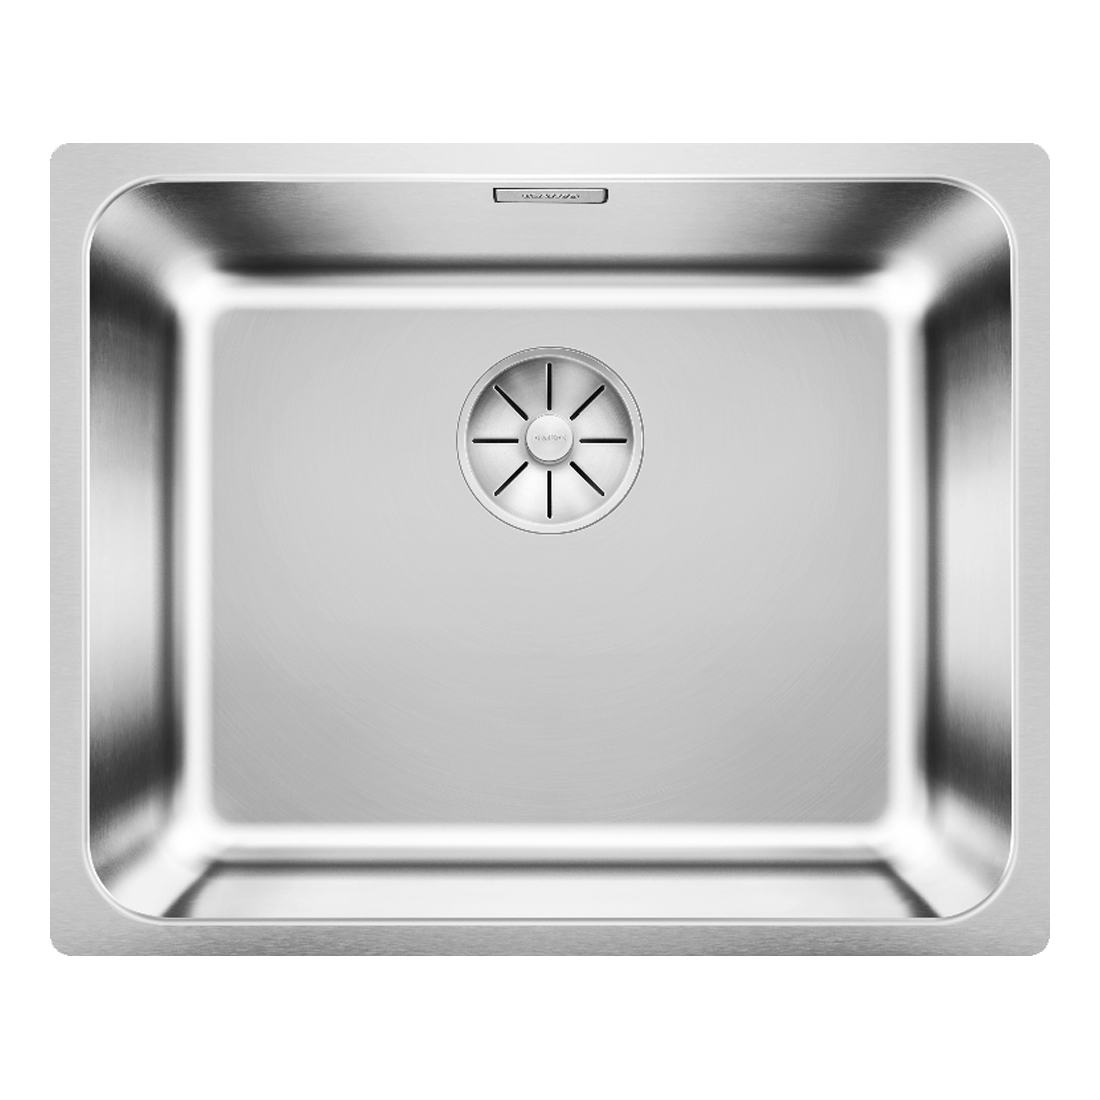 Кухонная мойка Blanco Solis 500-IF полированная сталь кухонная мойка reginox queen r60 lux kgokg сталь